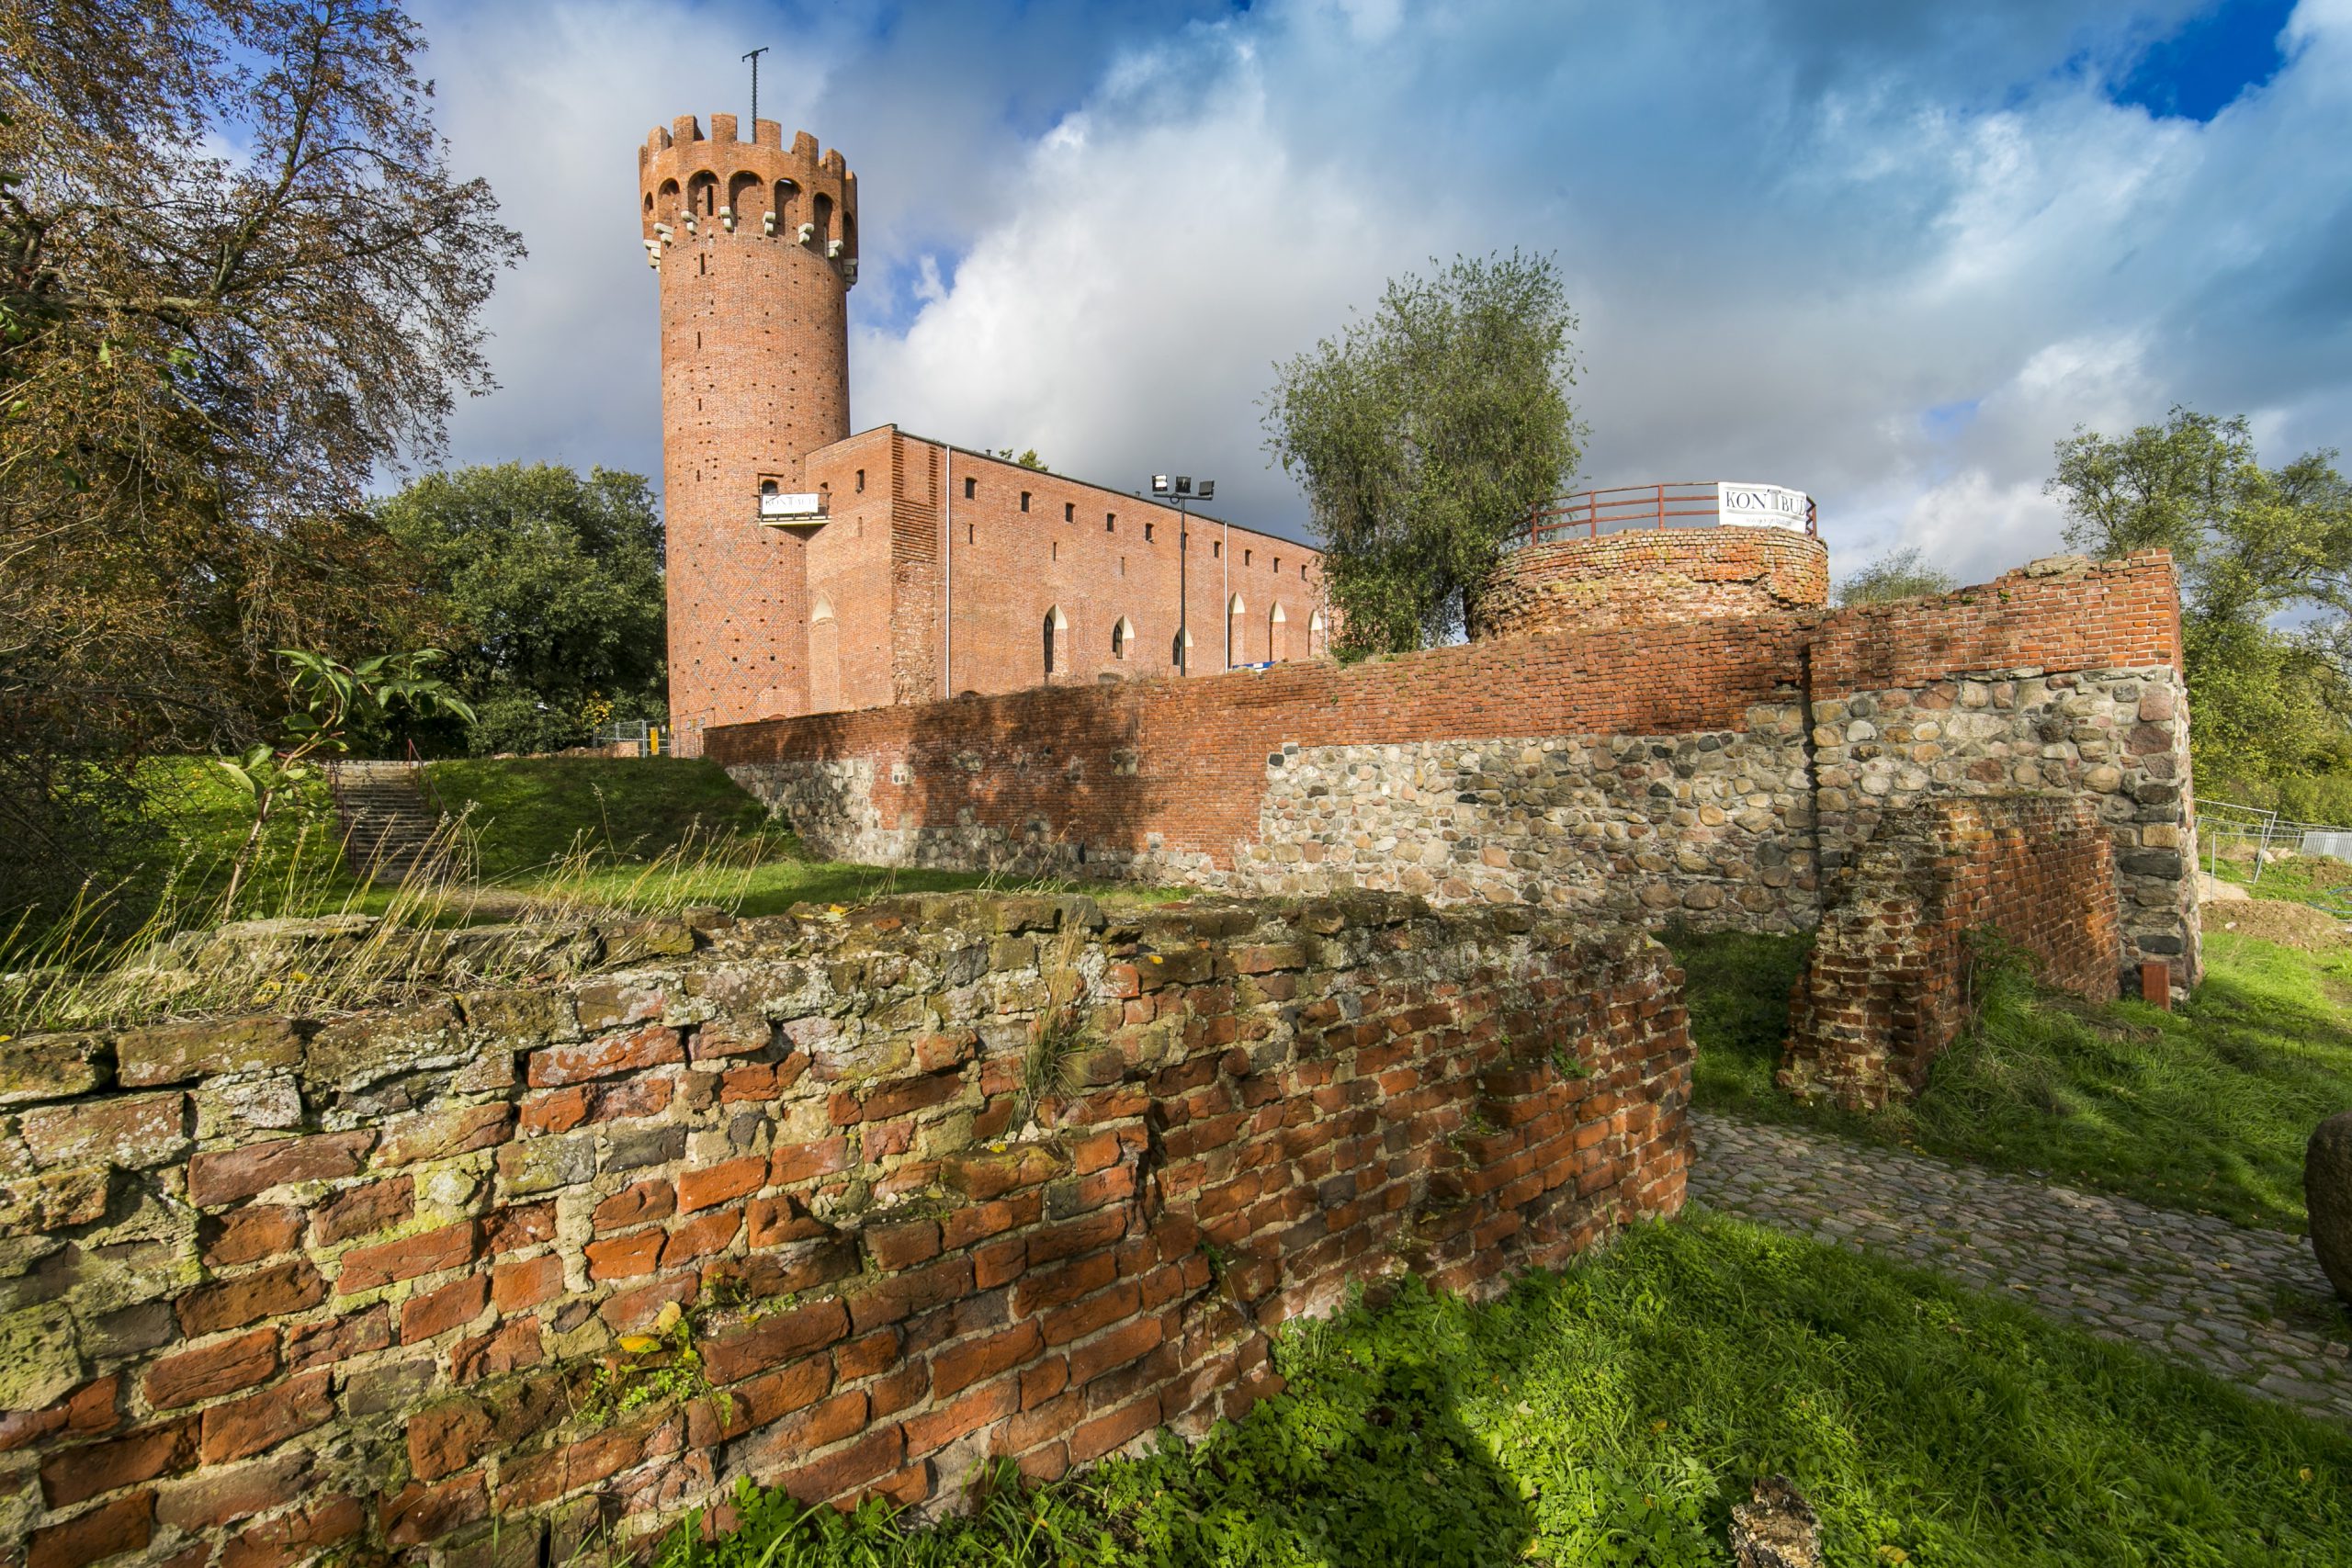 widok na zniszczony mur obronny zamku, w tle zamek krzyżacki w Świeciu